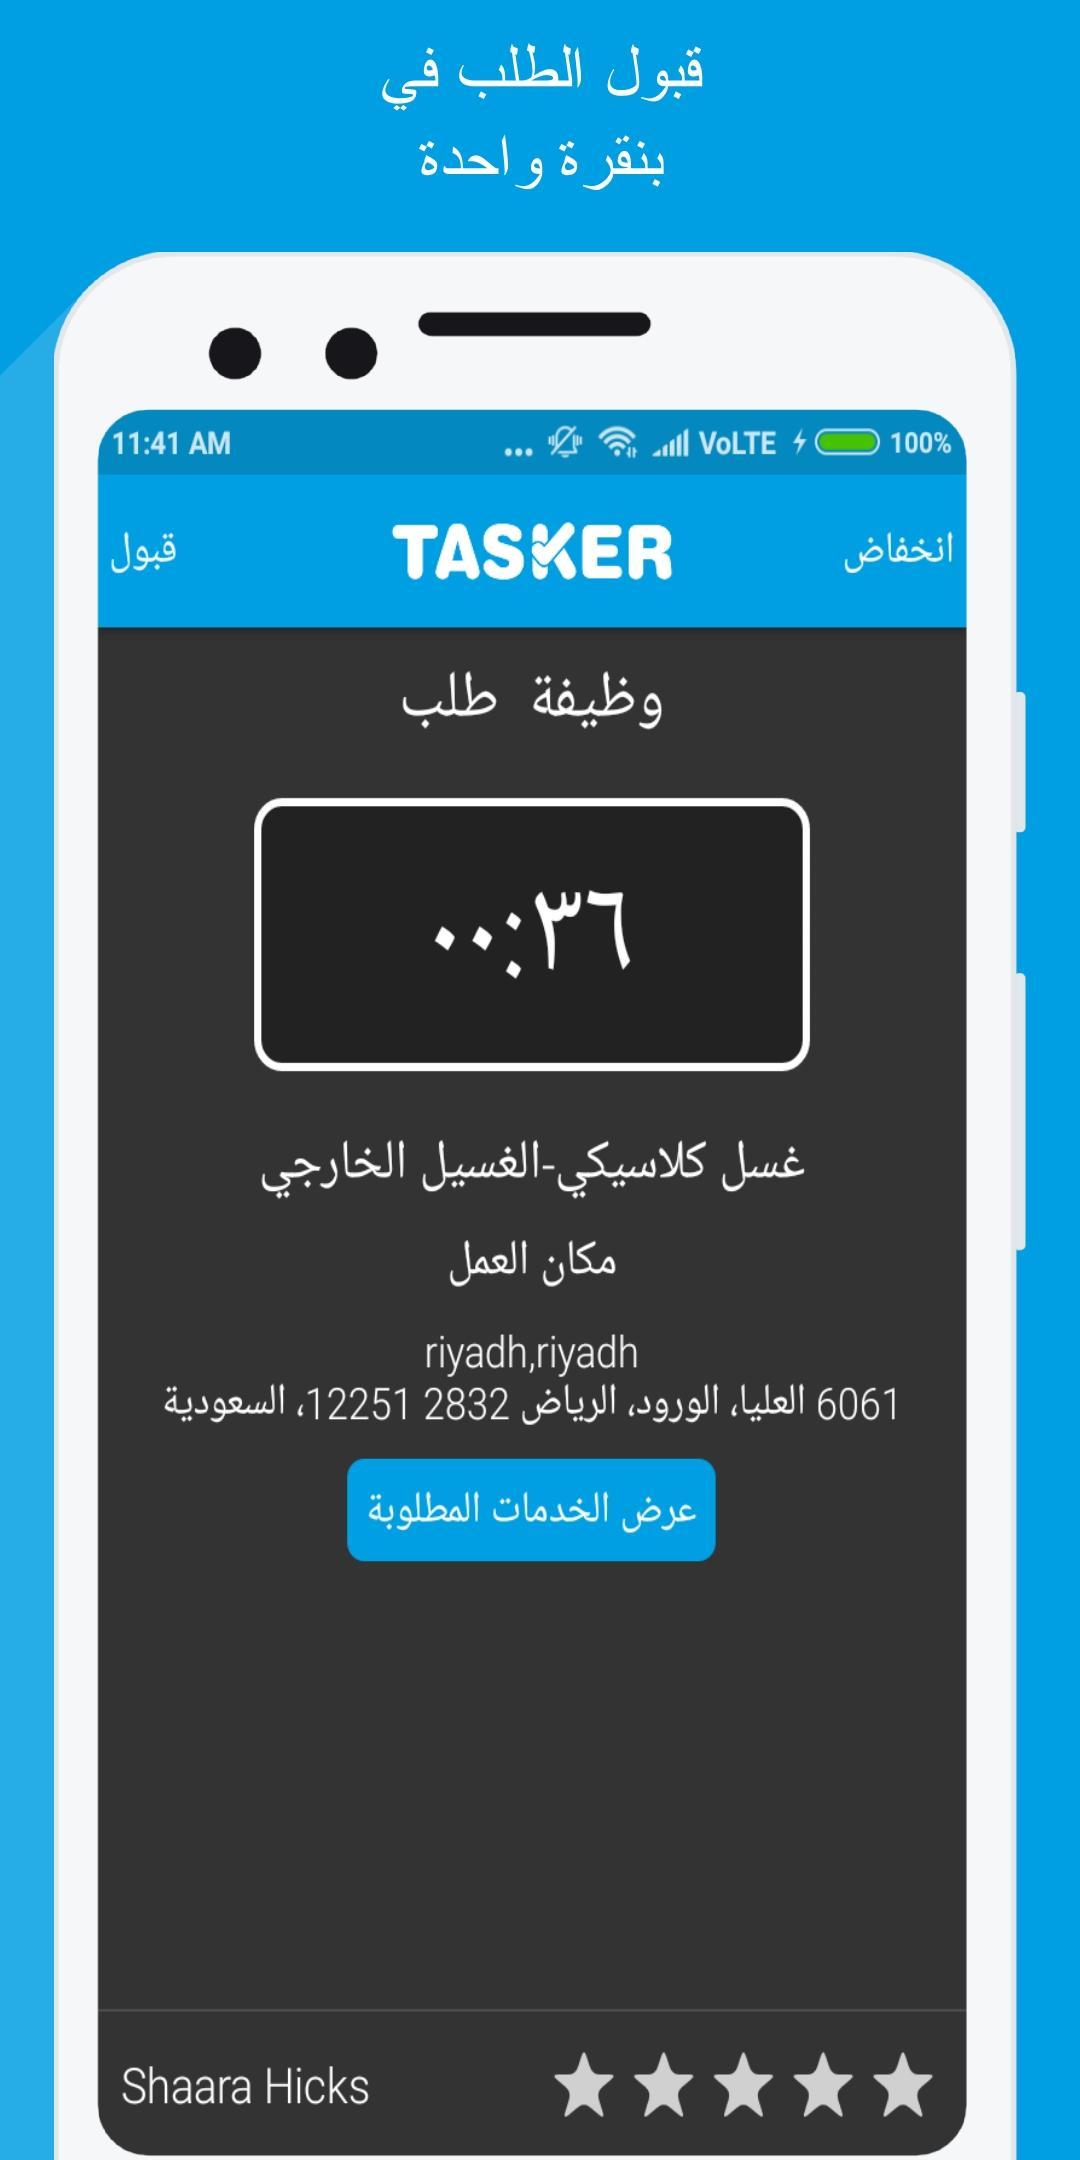 Tasker pro for Android - APK Download